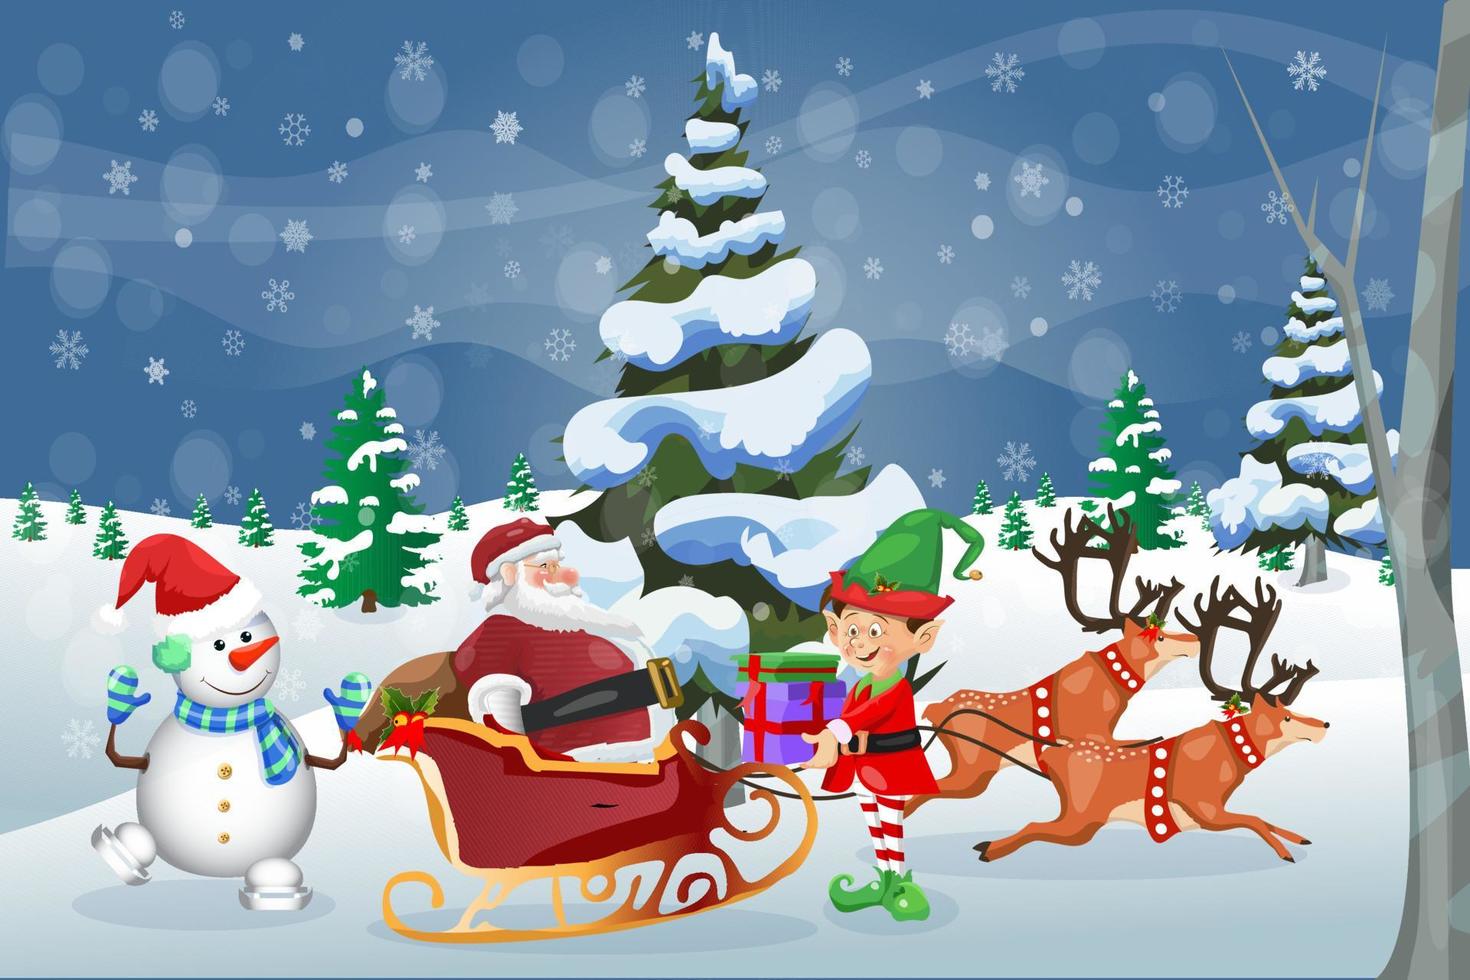 vrolijk kerstfeest winter wenskaart sant claus met sneeuwpop en elf vector